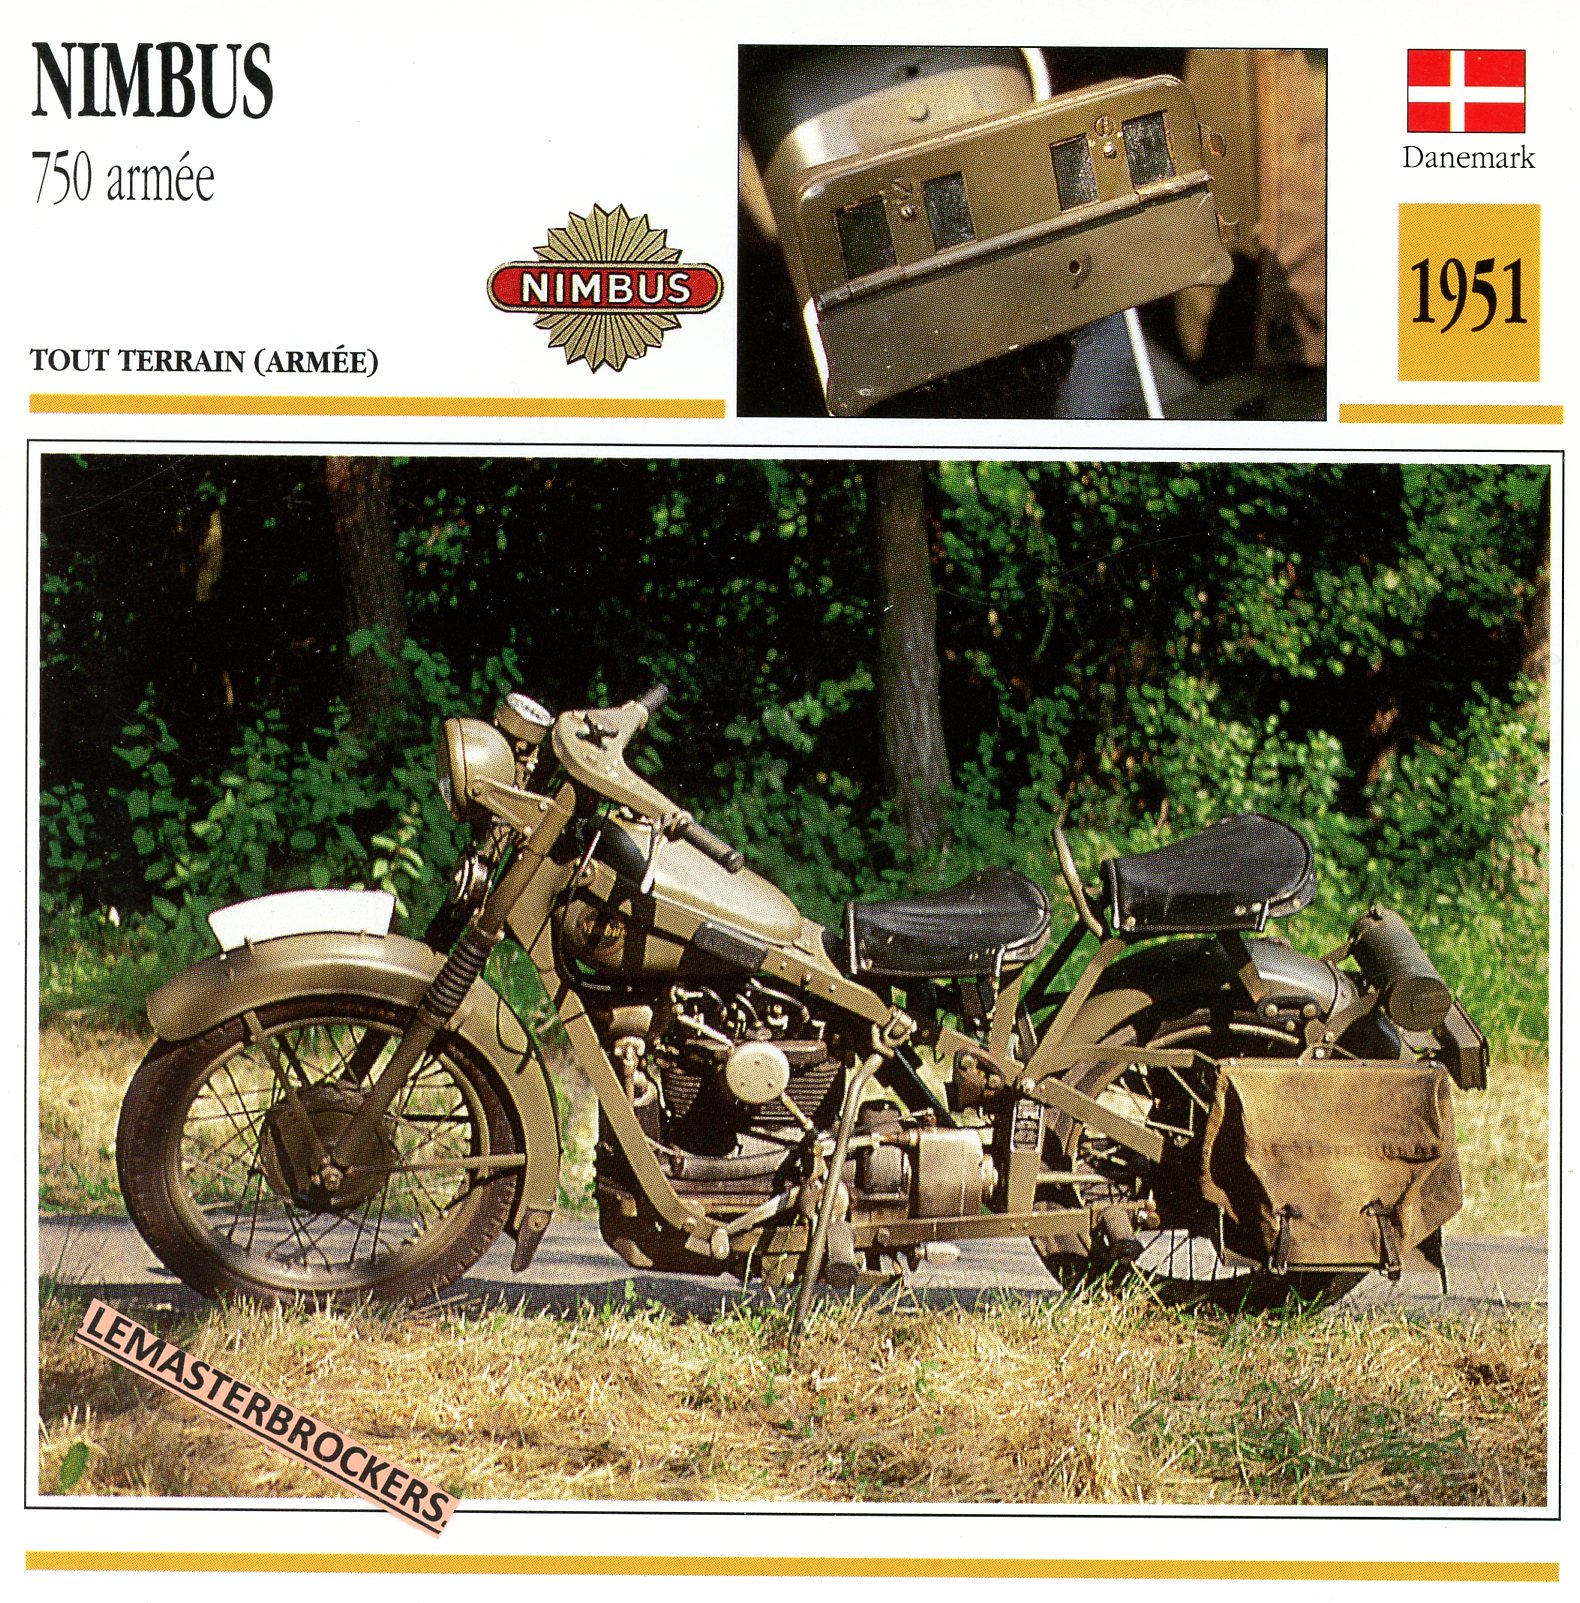 NIMBUS 750 ARMÉE 1951 - FICHE MOTO COLLECTION ATLAS